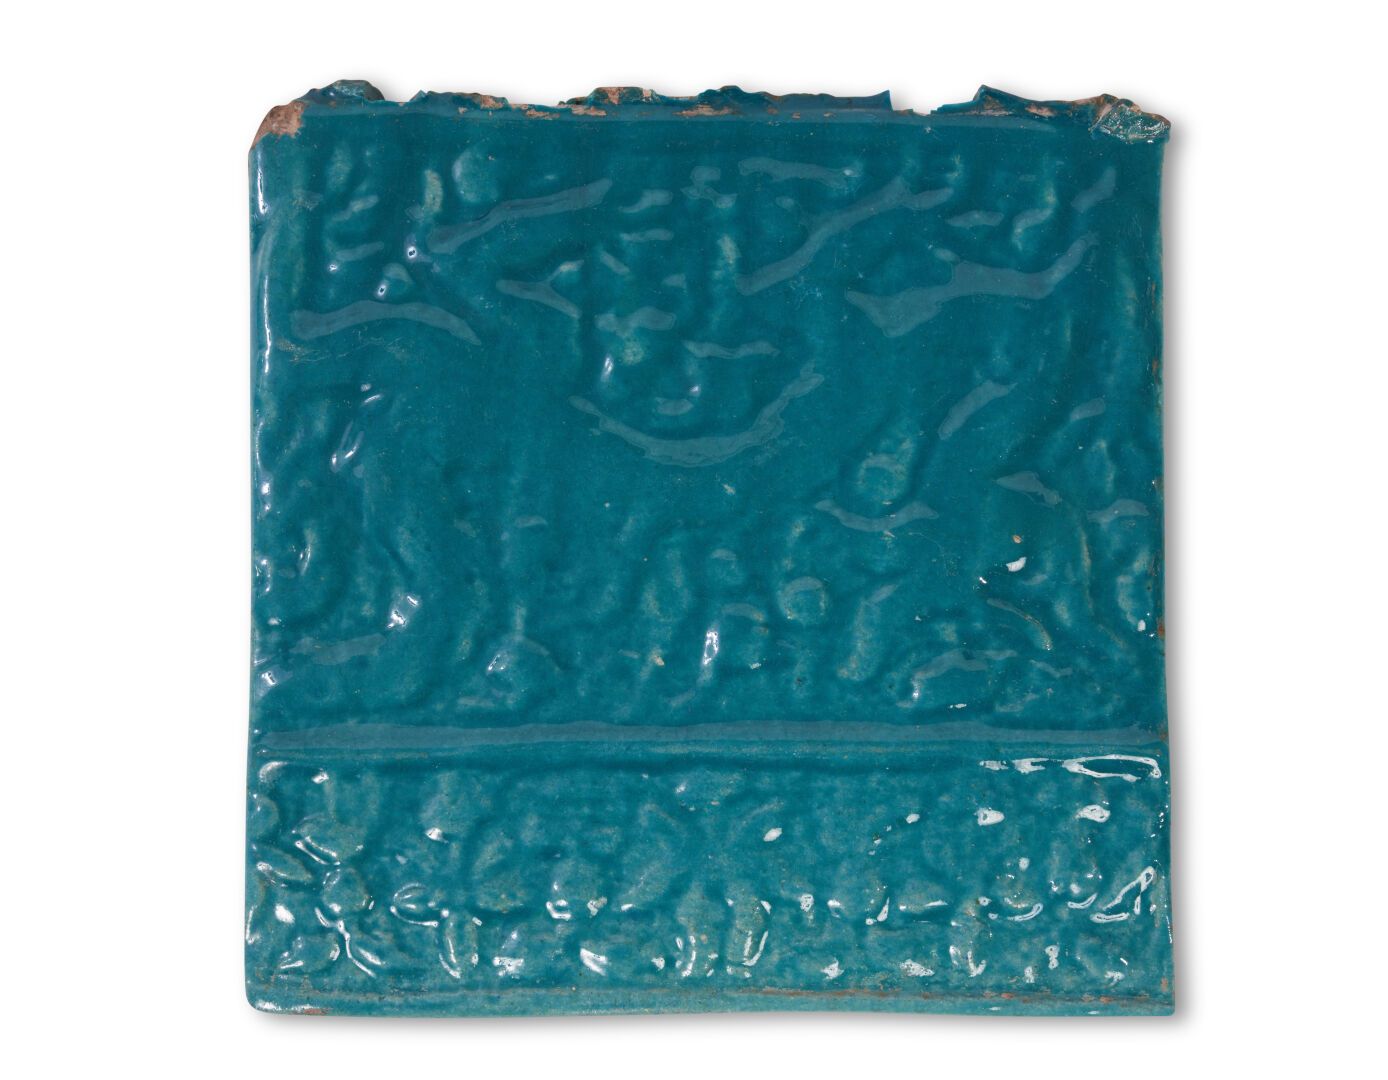 Null Irán
Dos azulejos de cerámica vidriada monocromática de color turquesa con &hellip;